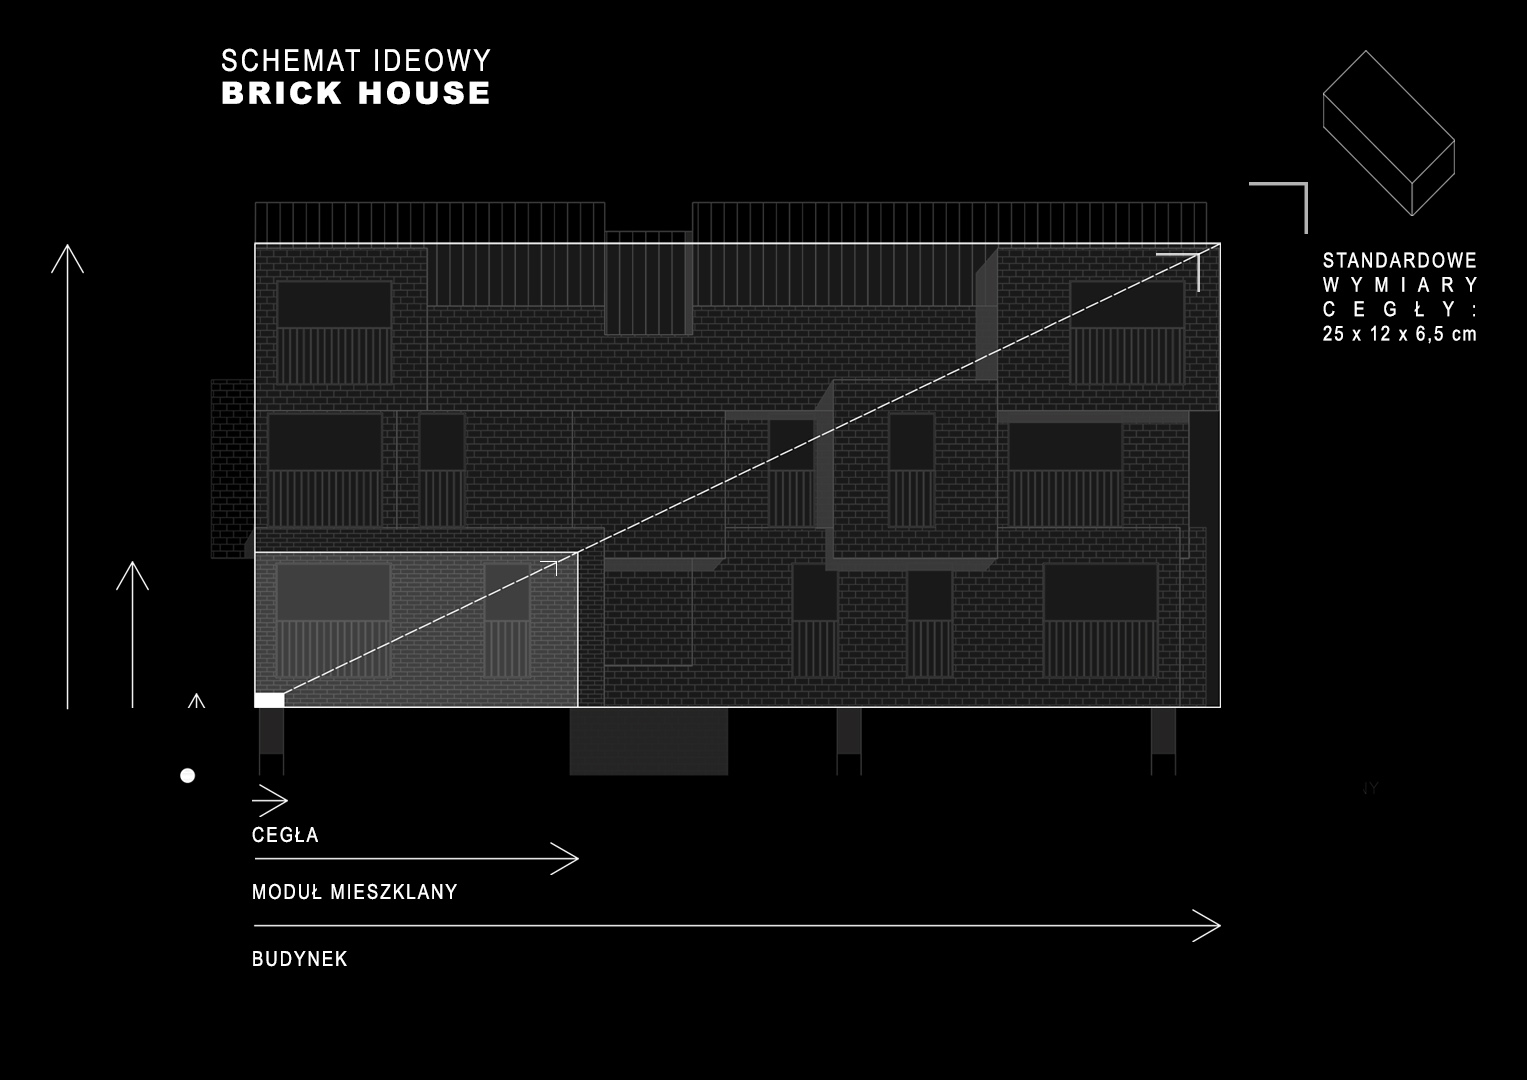 Brick House - schemat ideowy